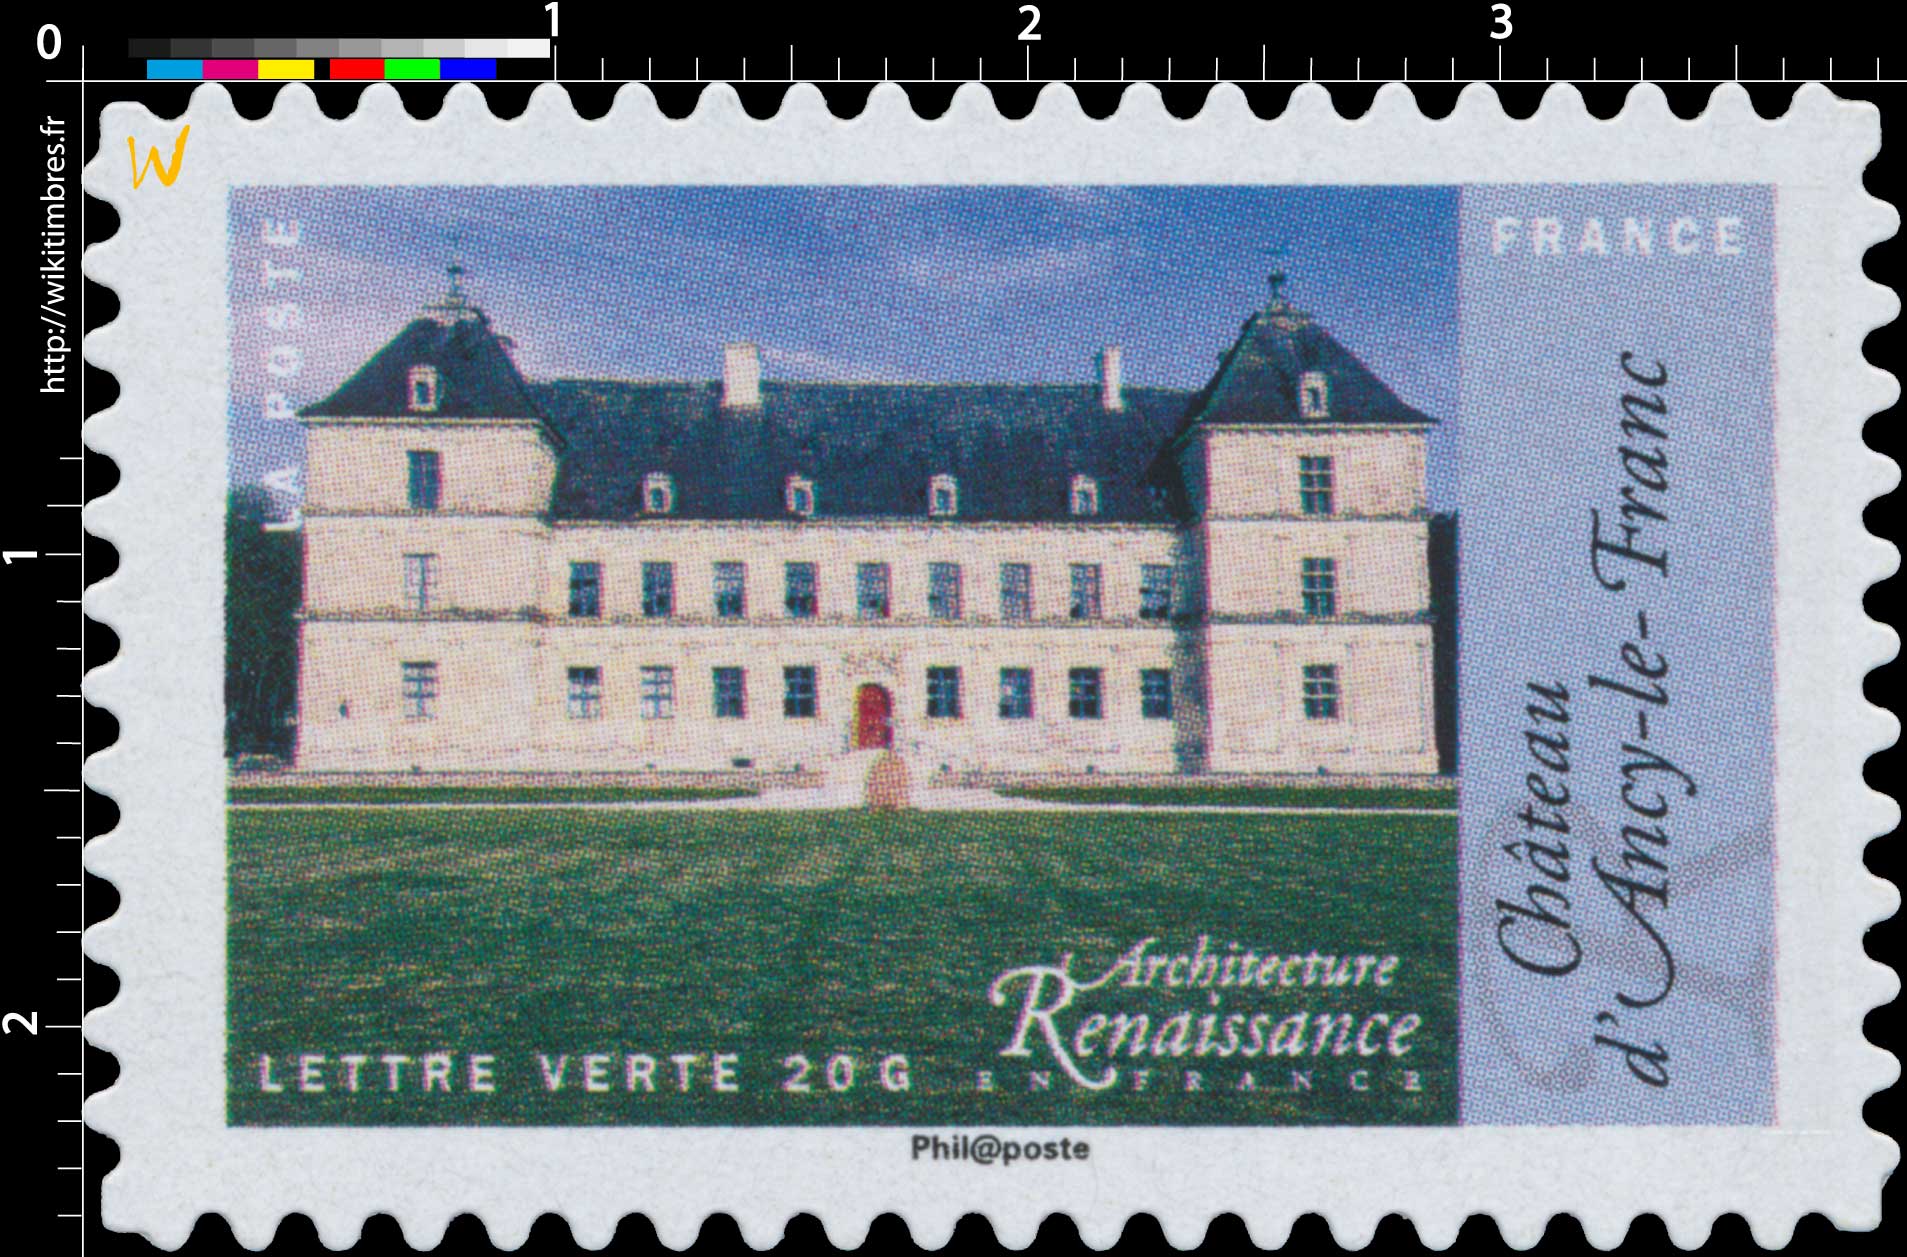 2015 Architecture Renaissance en France - Château d'Ancy-le-Franc